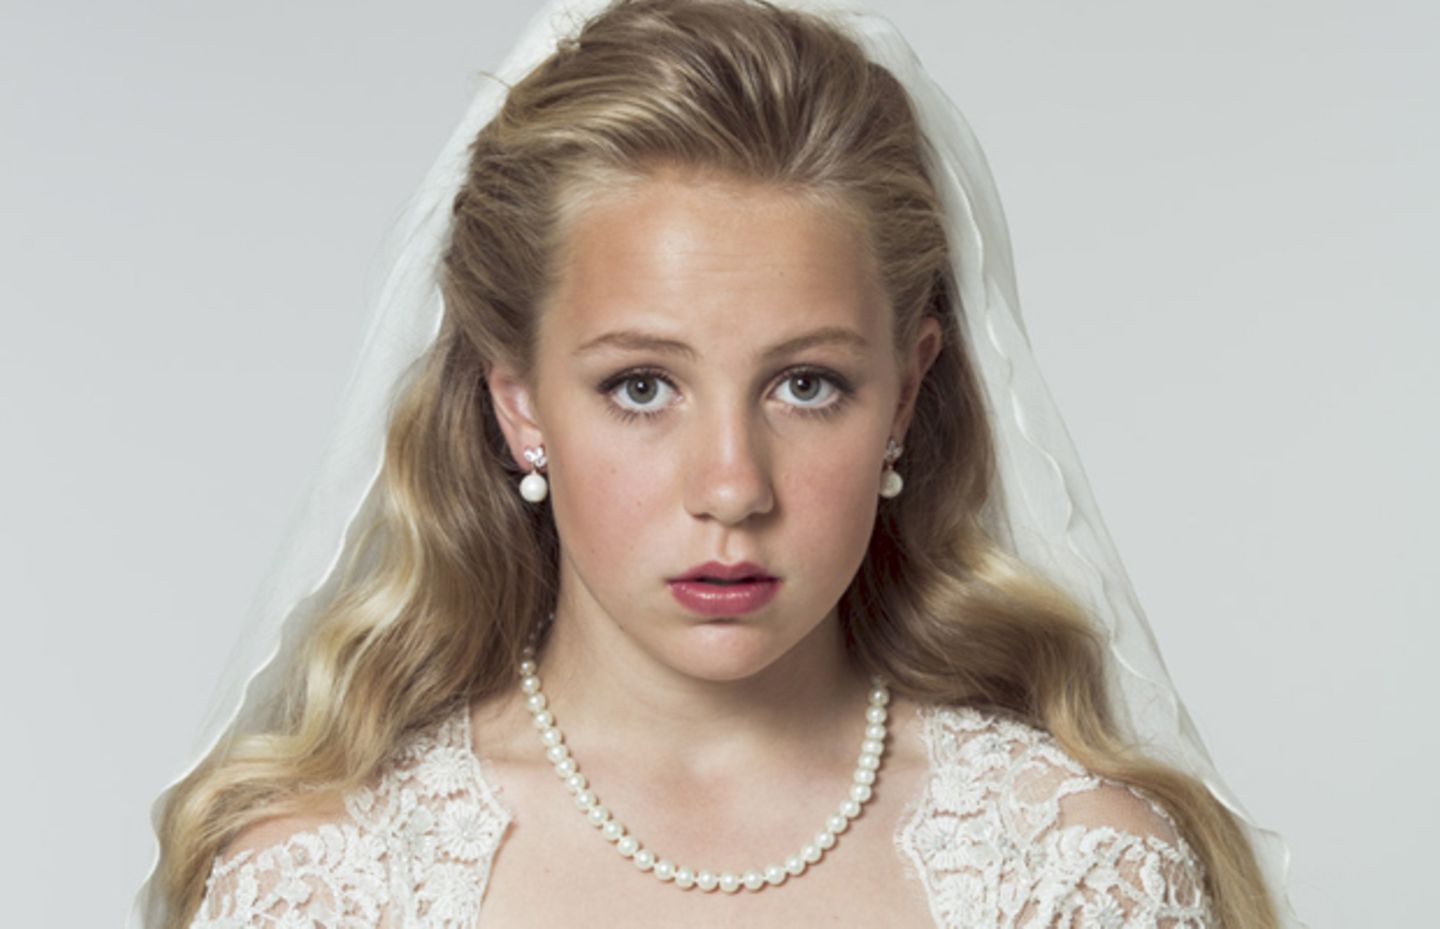 Kinderheirat in Norwegen? Aktion soll aufrütteln